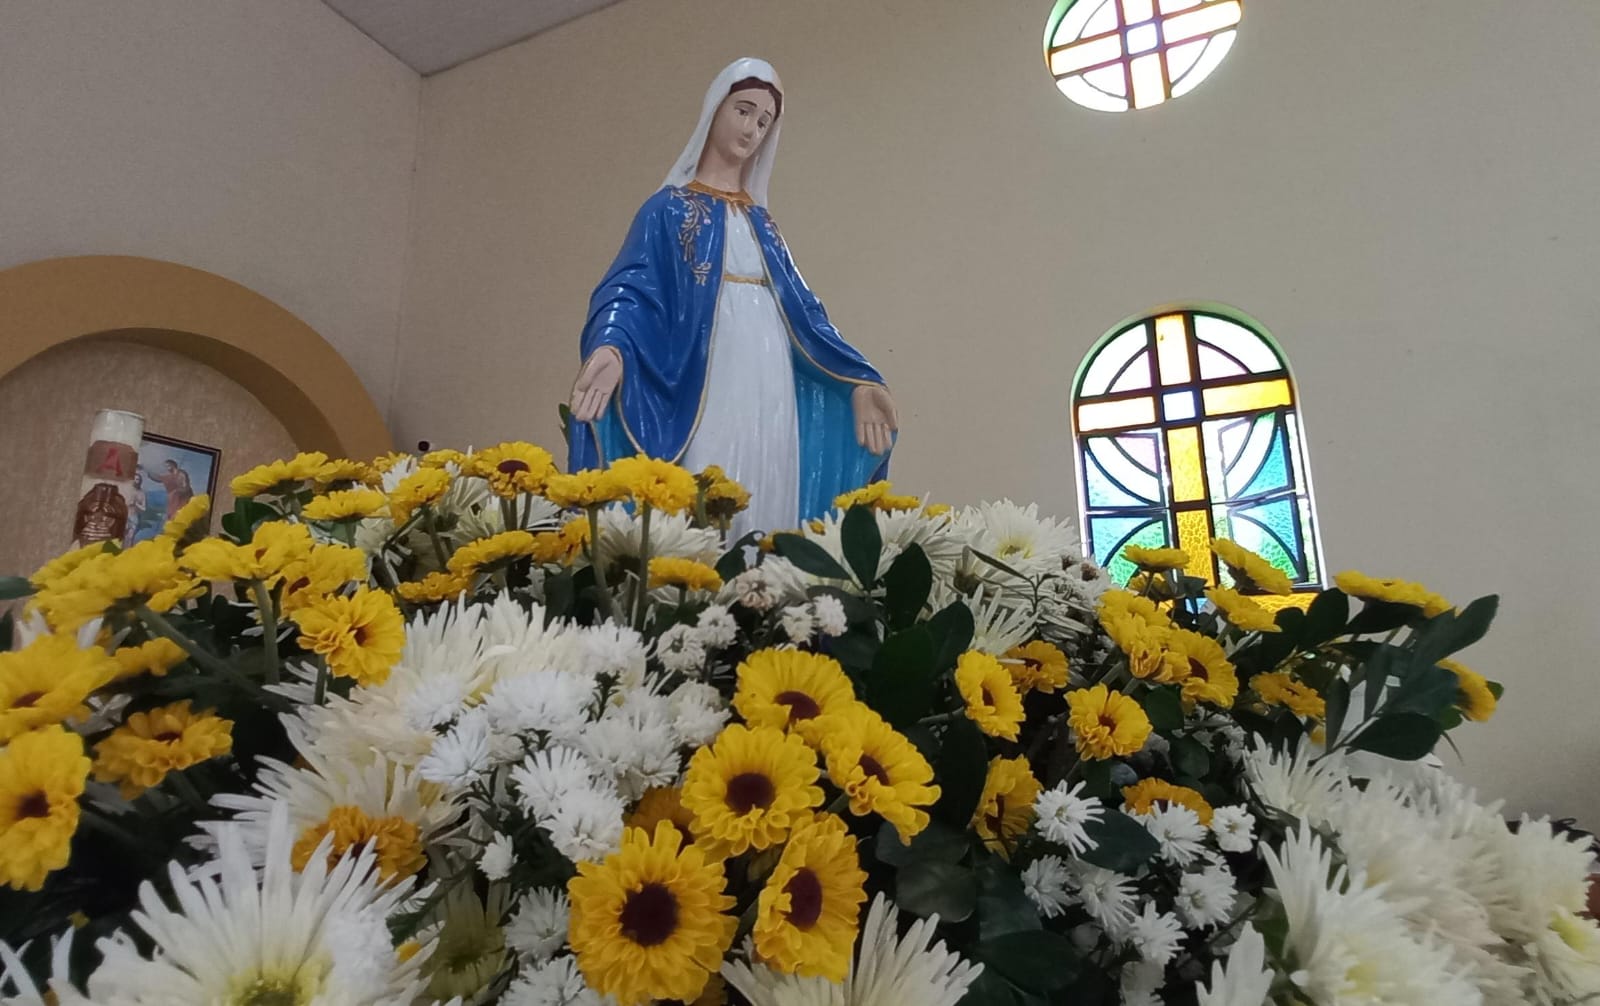 Festa de Nossa Senhora das Graças na Cidade Jardim começa nesta sexta-feira (17)